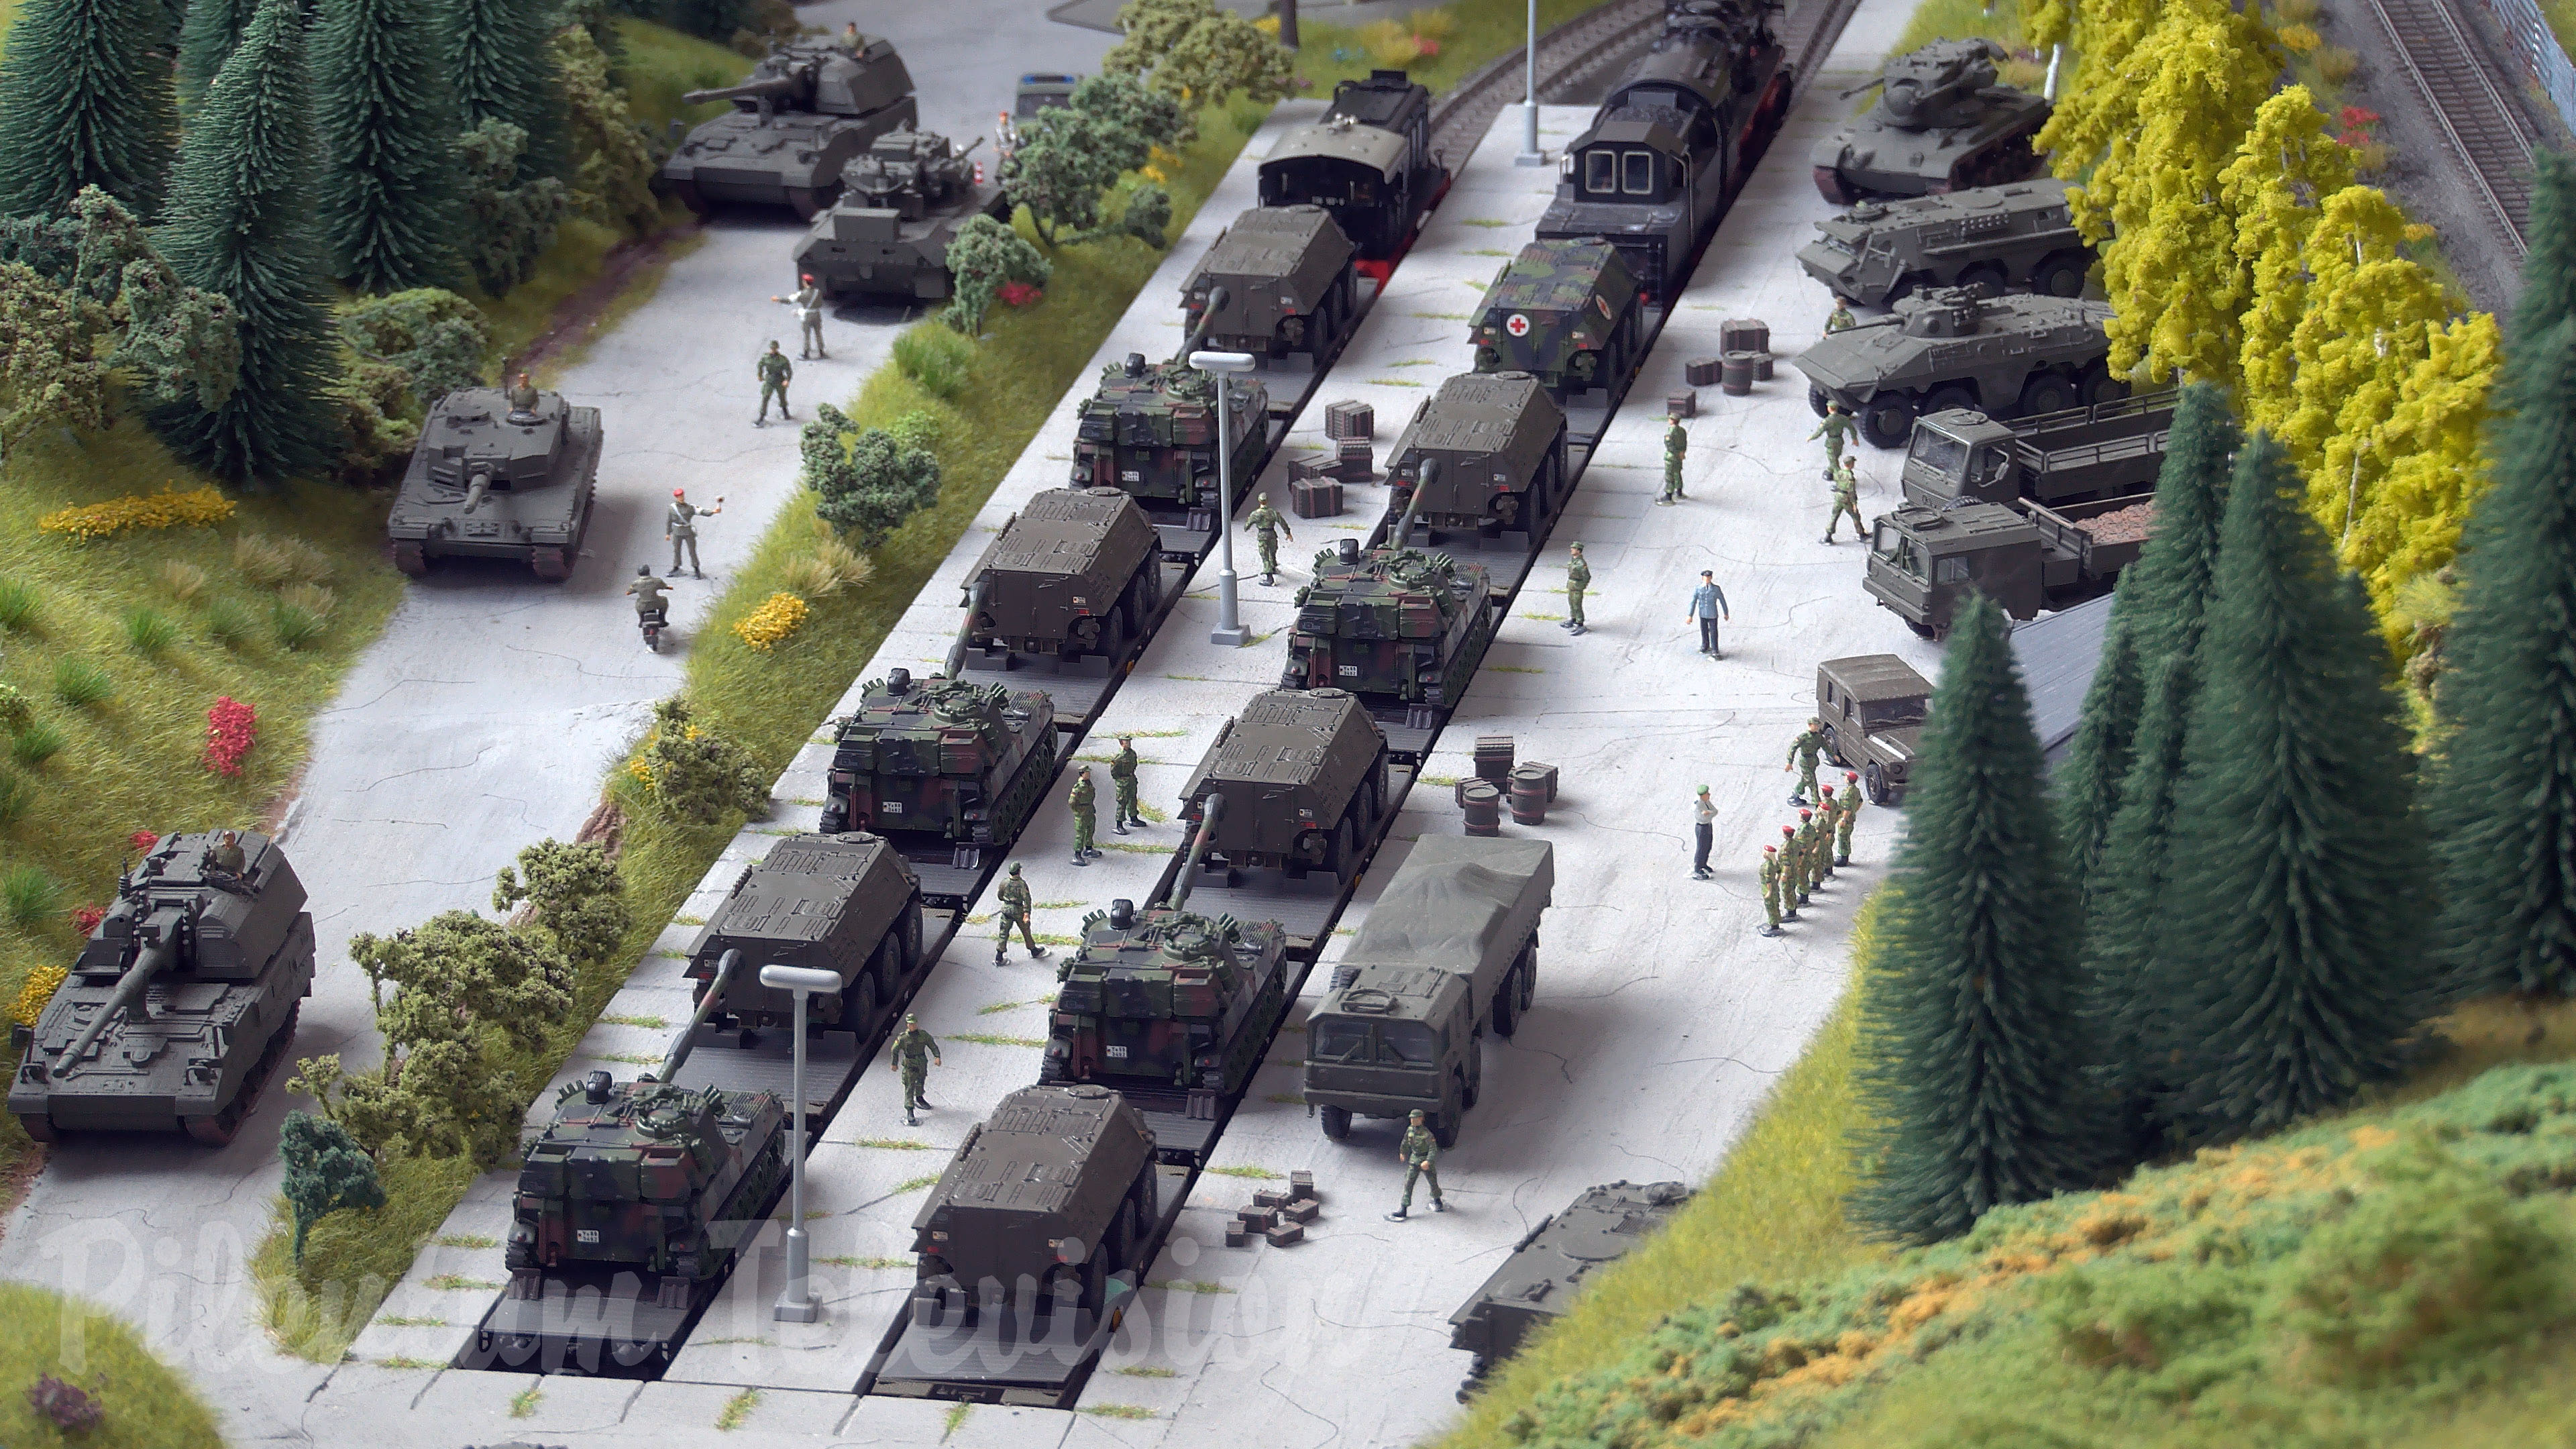 Diorama de trains militaires - Chars allemands transportés par des trains à vapeur